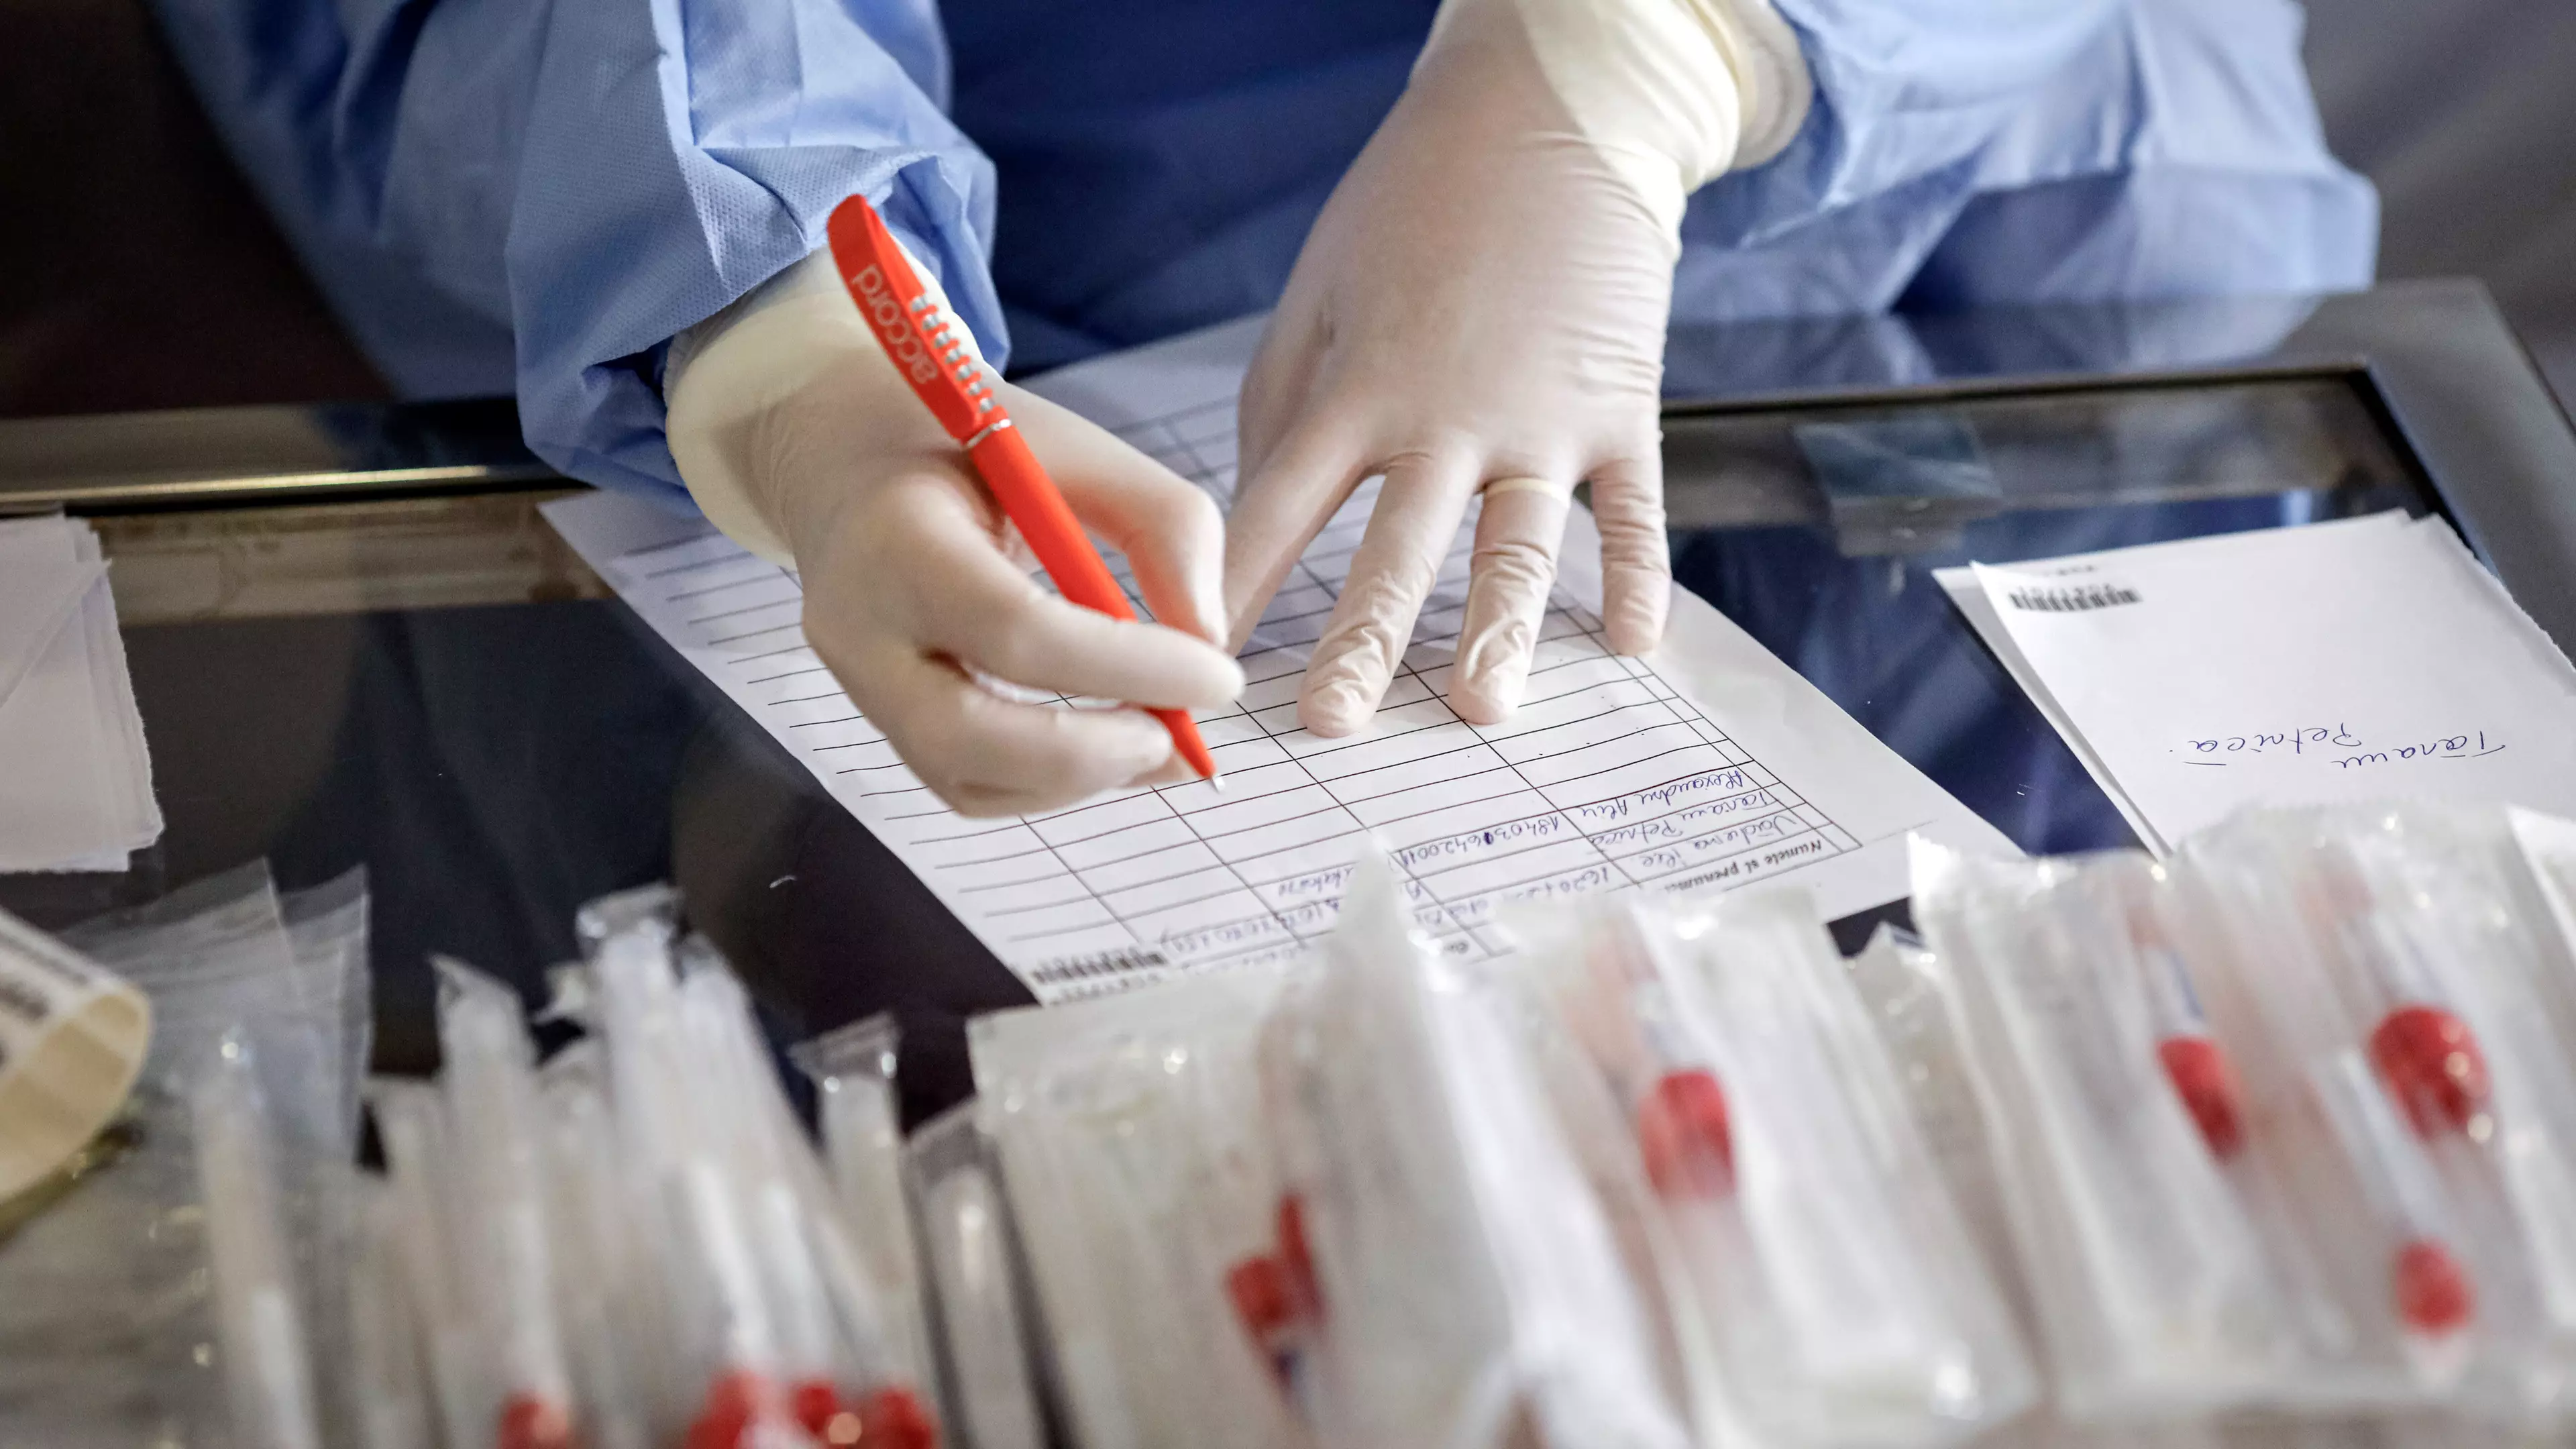 Ten More Patients In UK Die After Testing Positive For Coronavirus